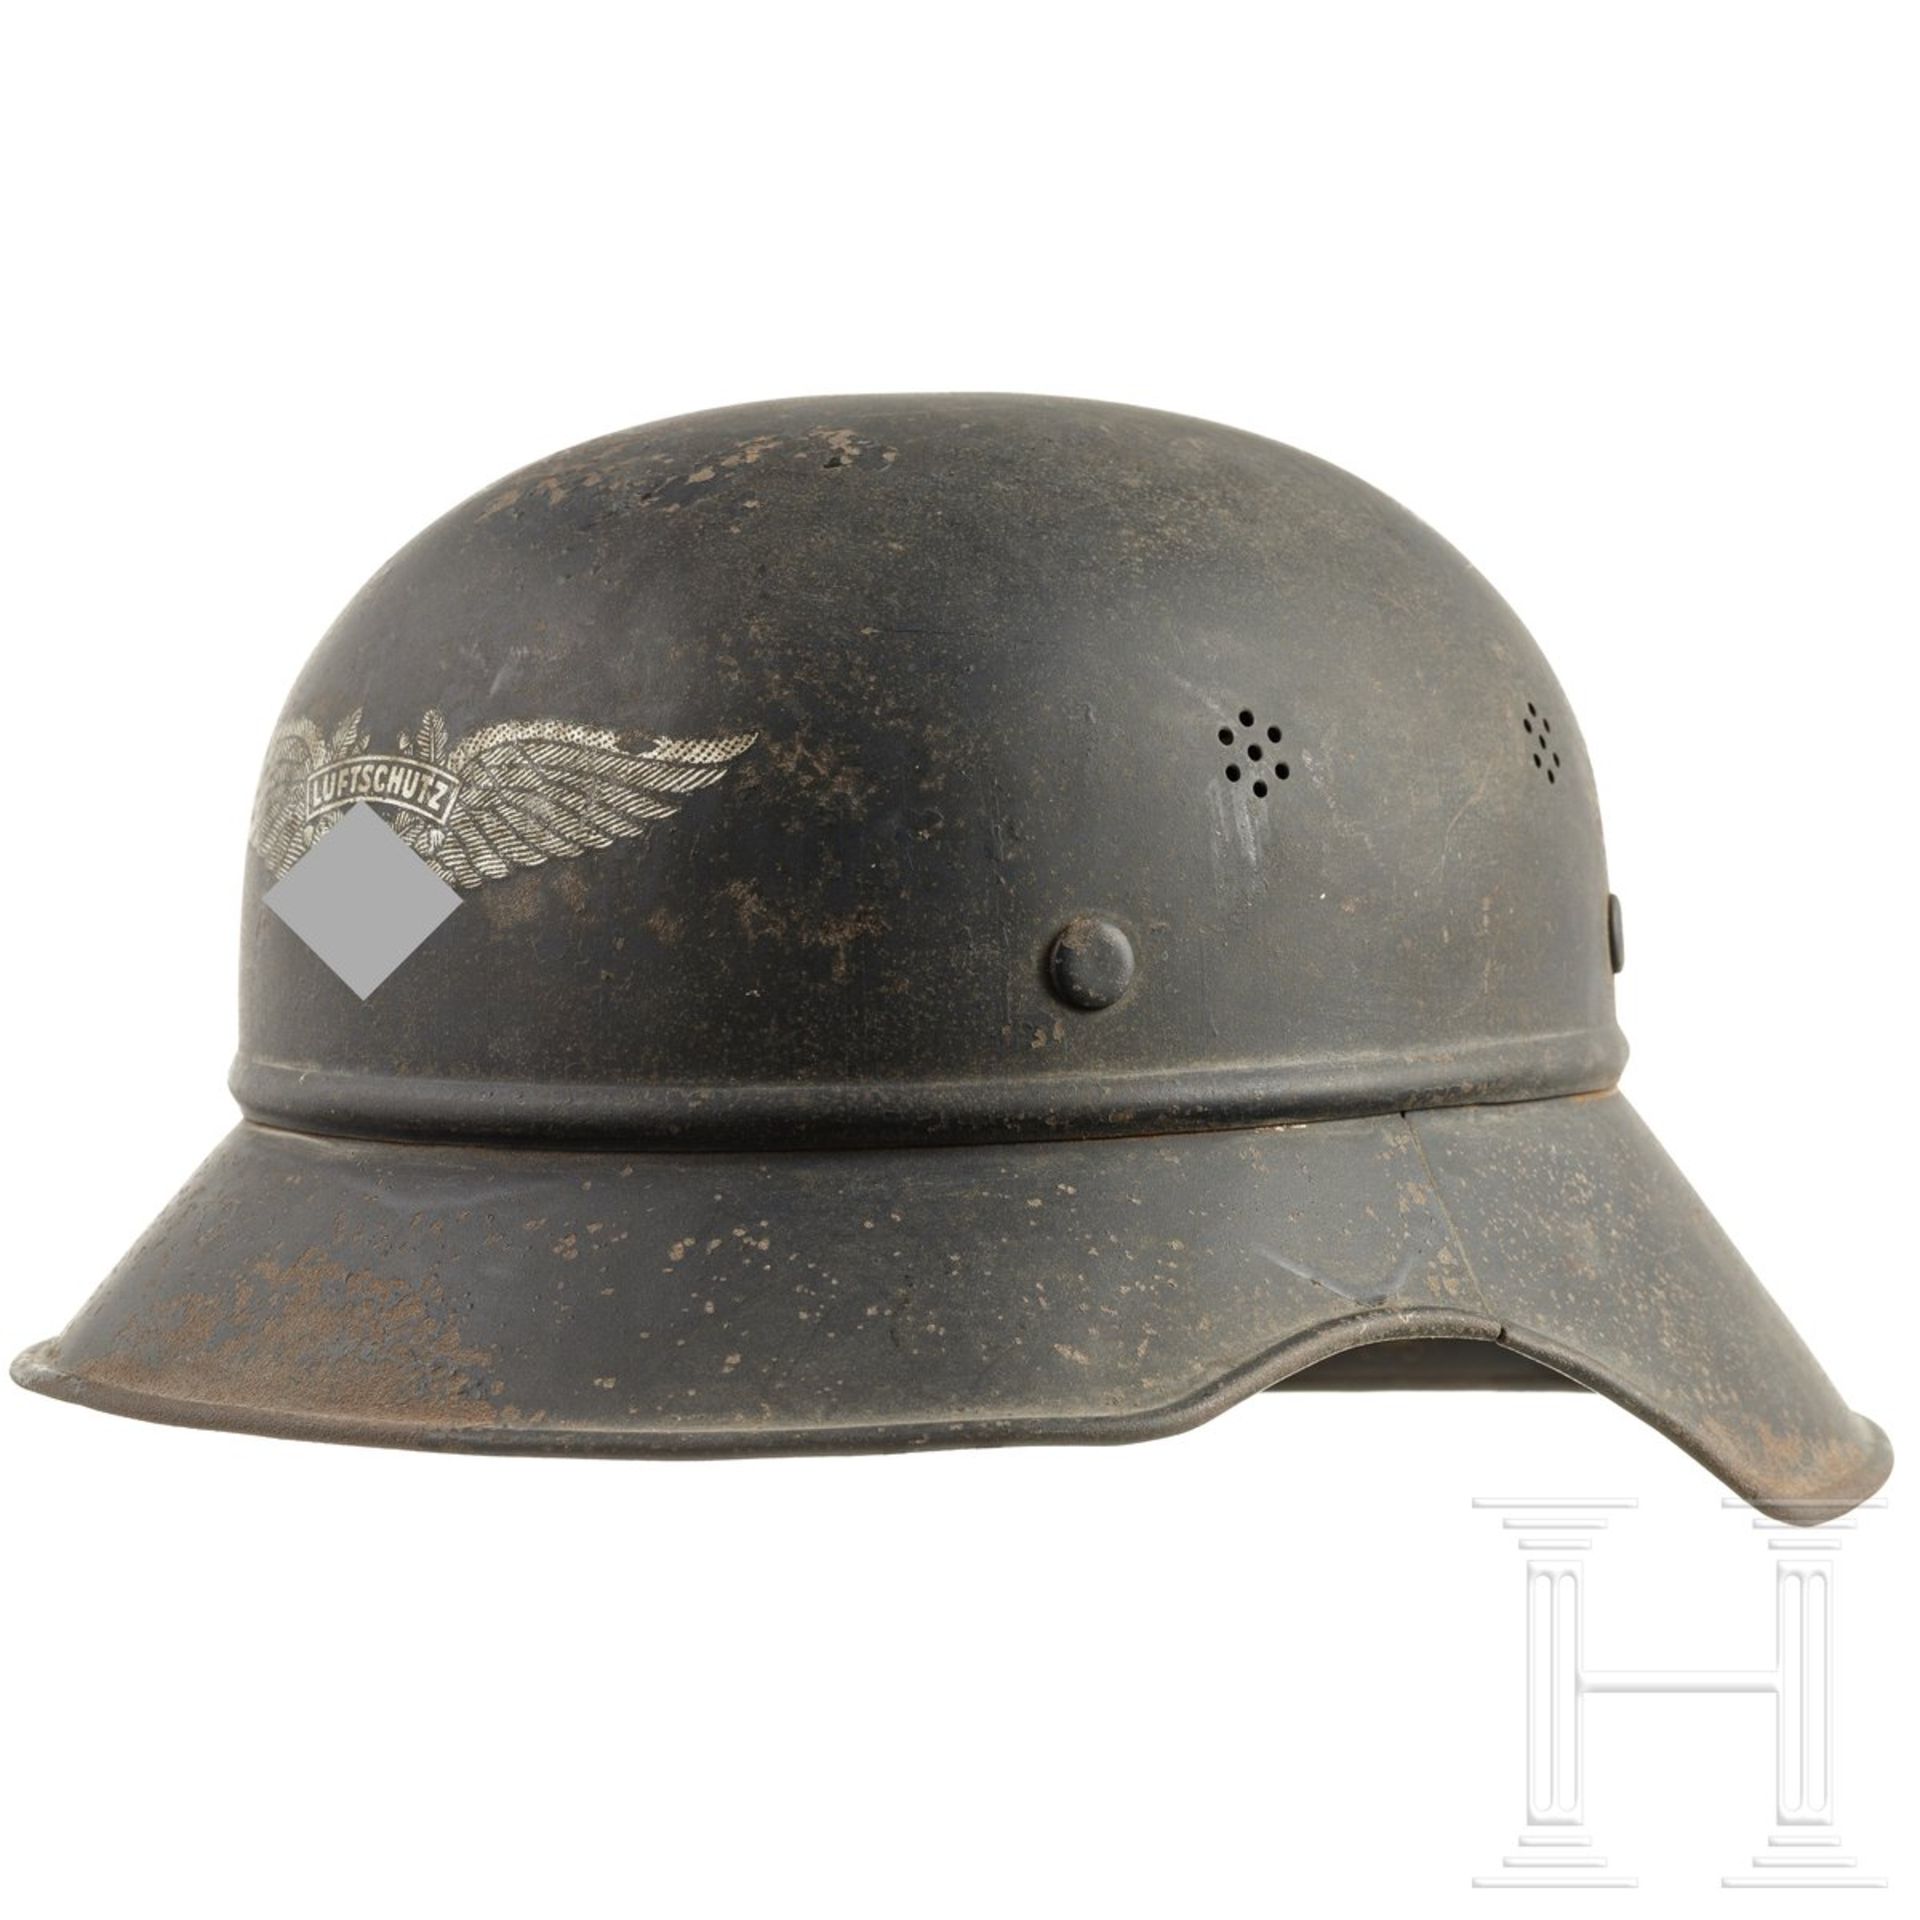 Stahlhelm "Gladiator" für Luftschutz, deutsch, um 1940